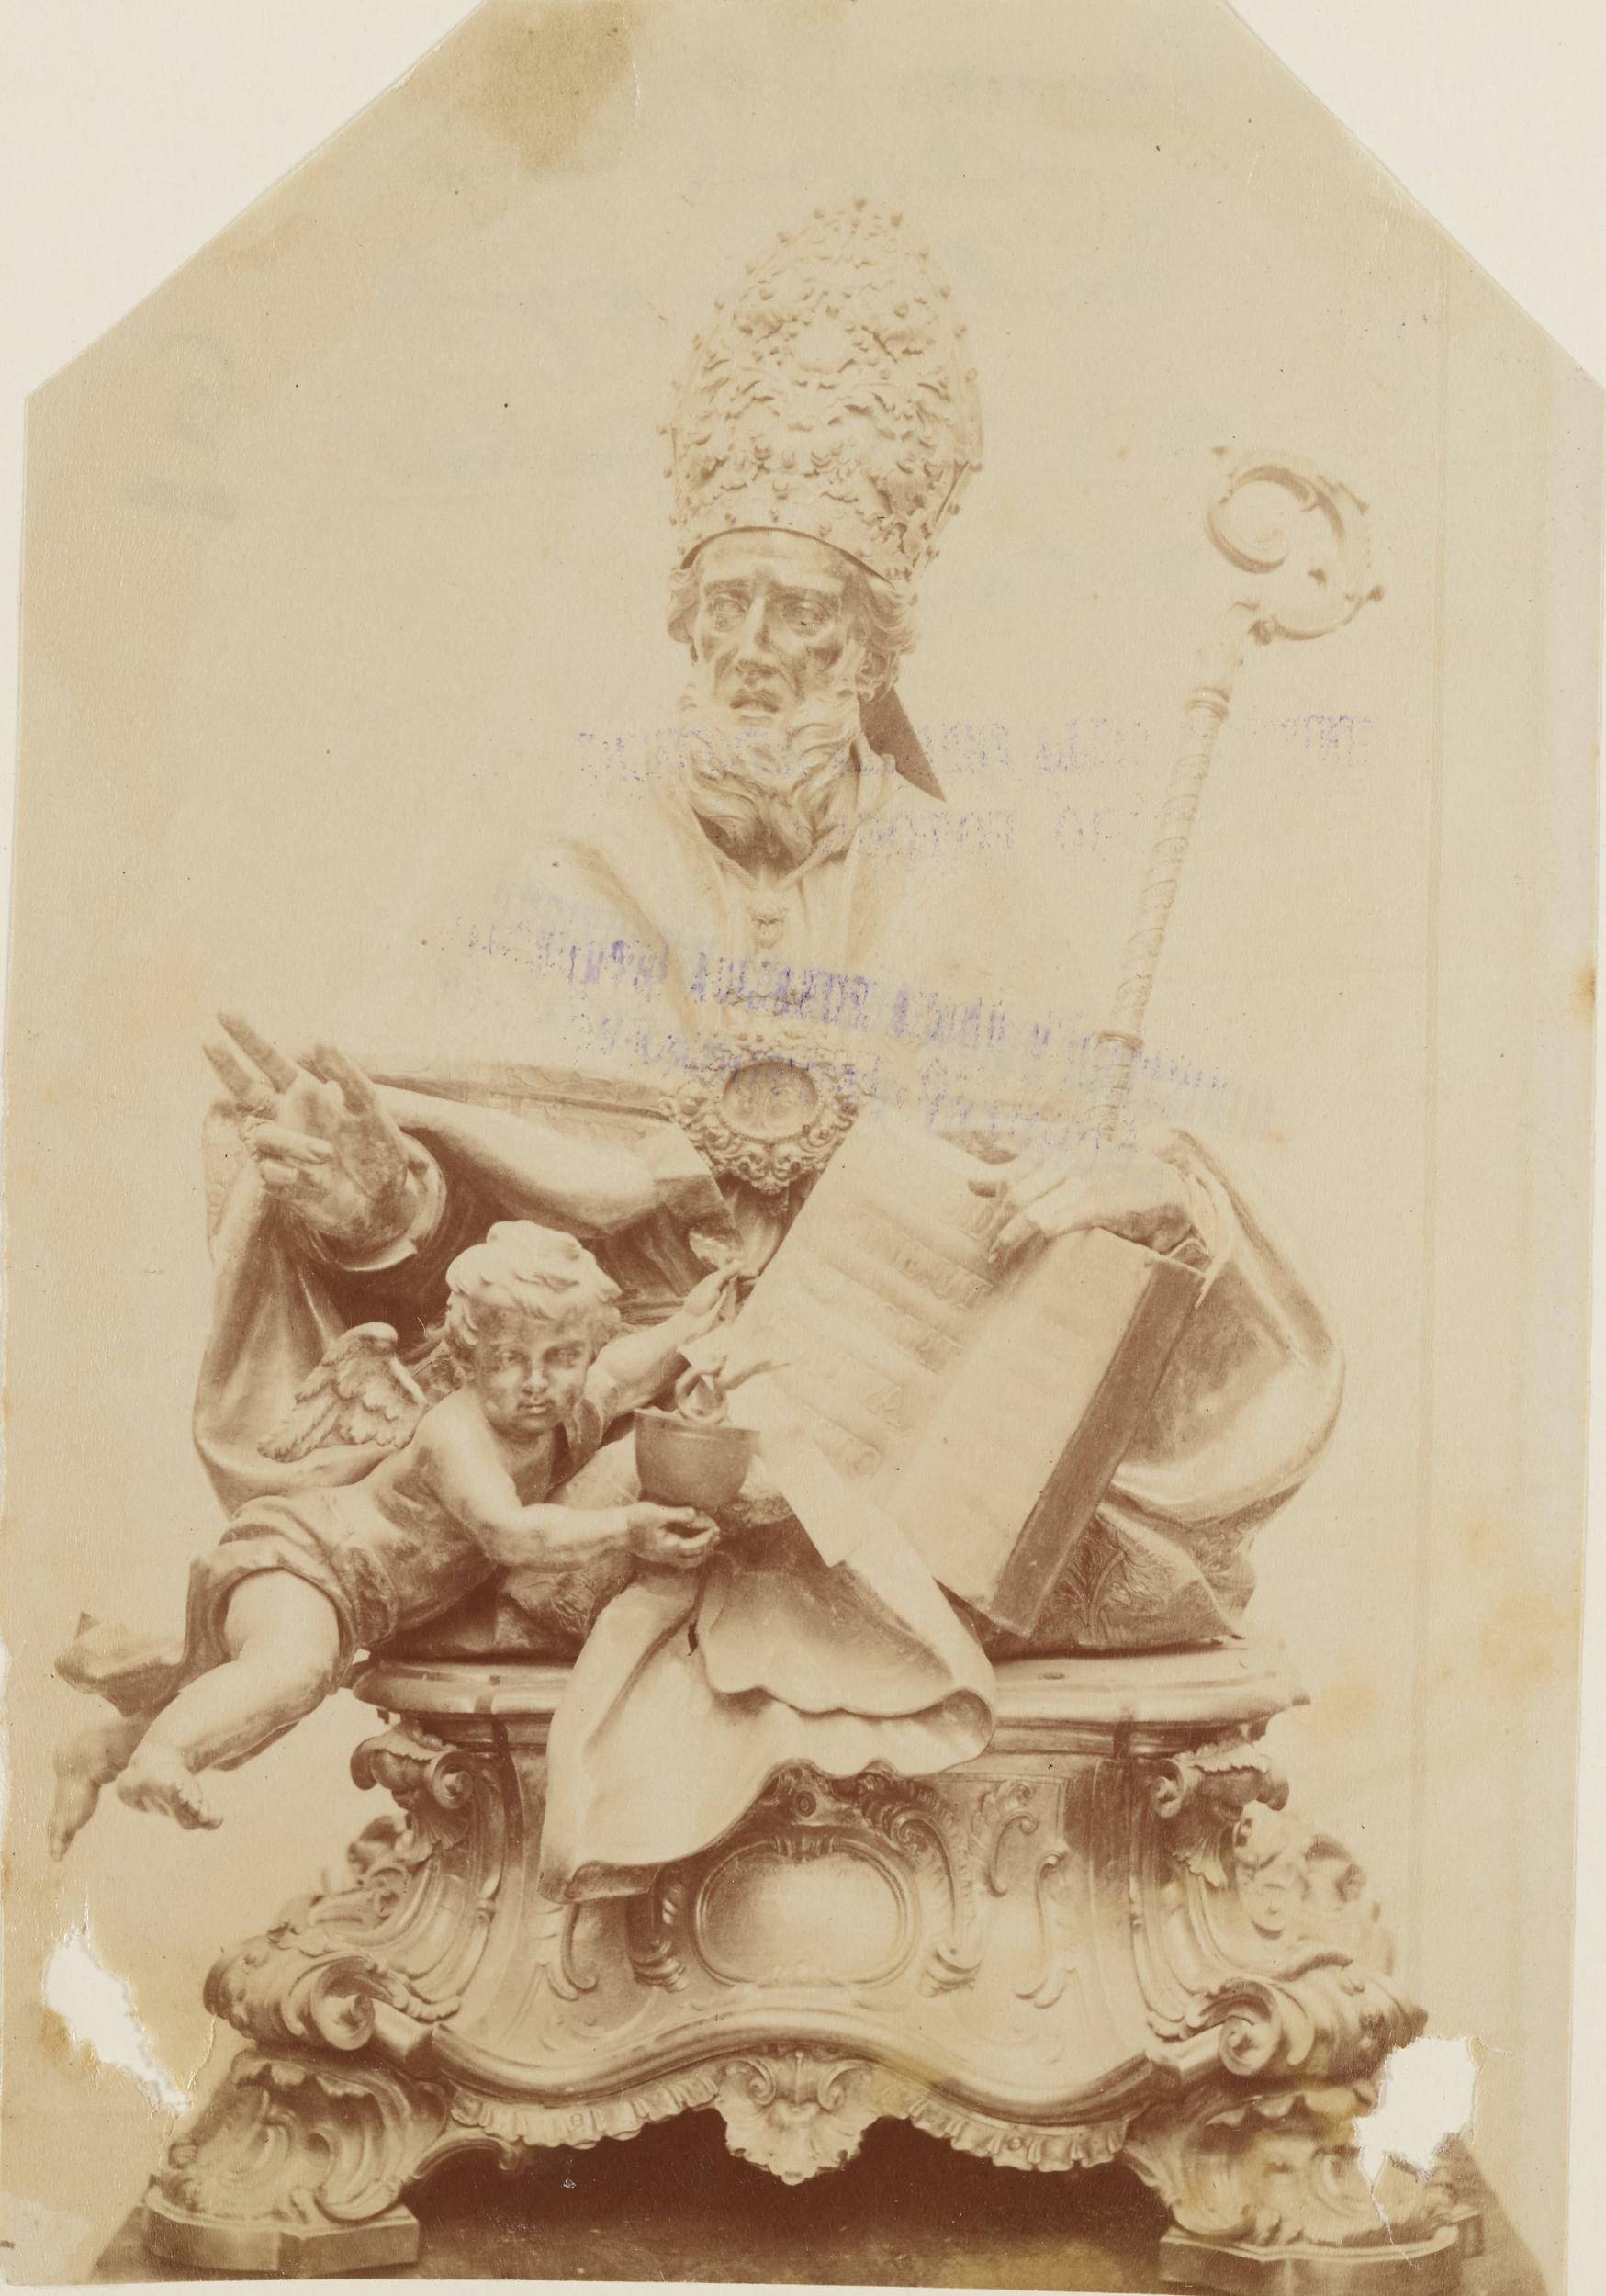 Fotografo non identificato, Canosa di Puglia - Chiesa di S. Sabino, busto reliquario di S. Sabino, 1876-1900, albumina/carta, MPI143591